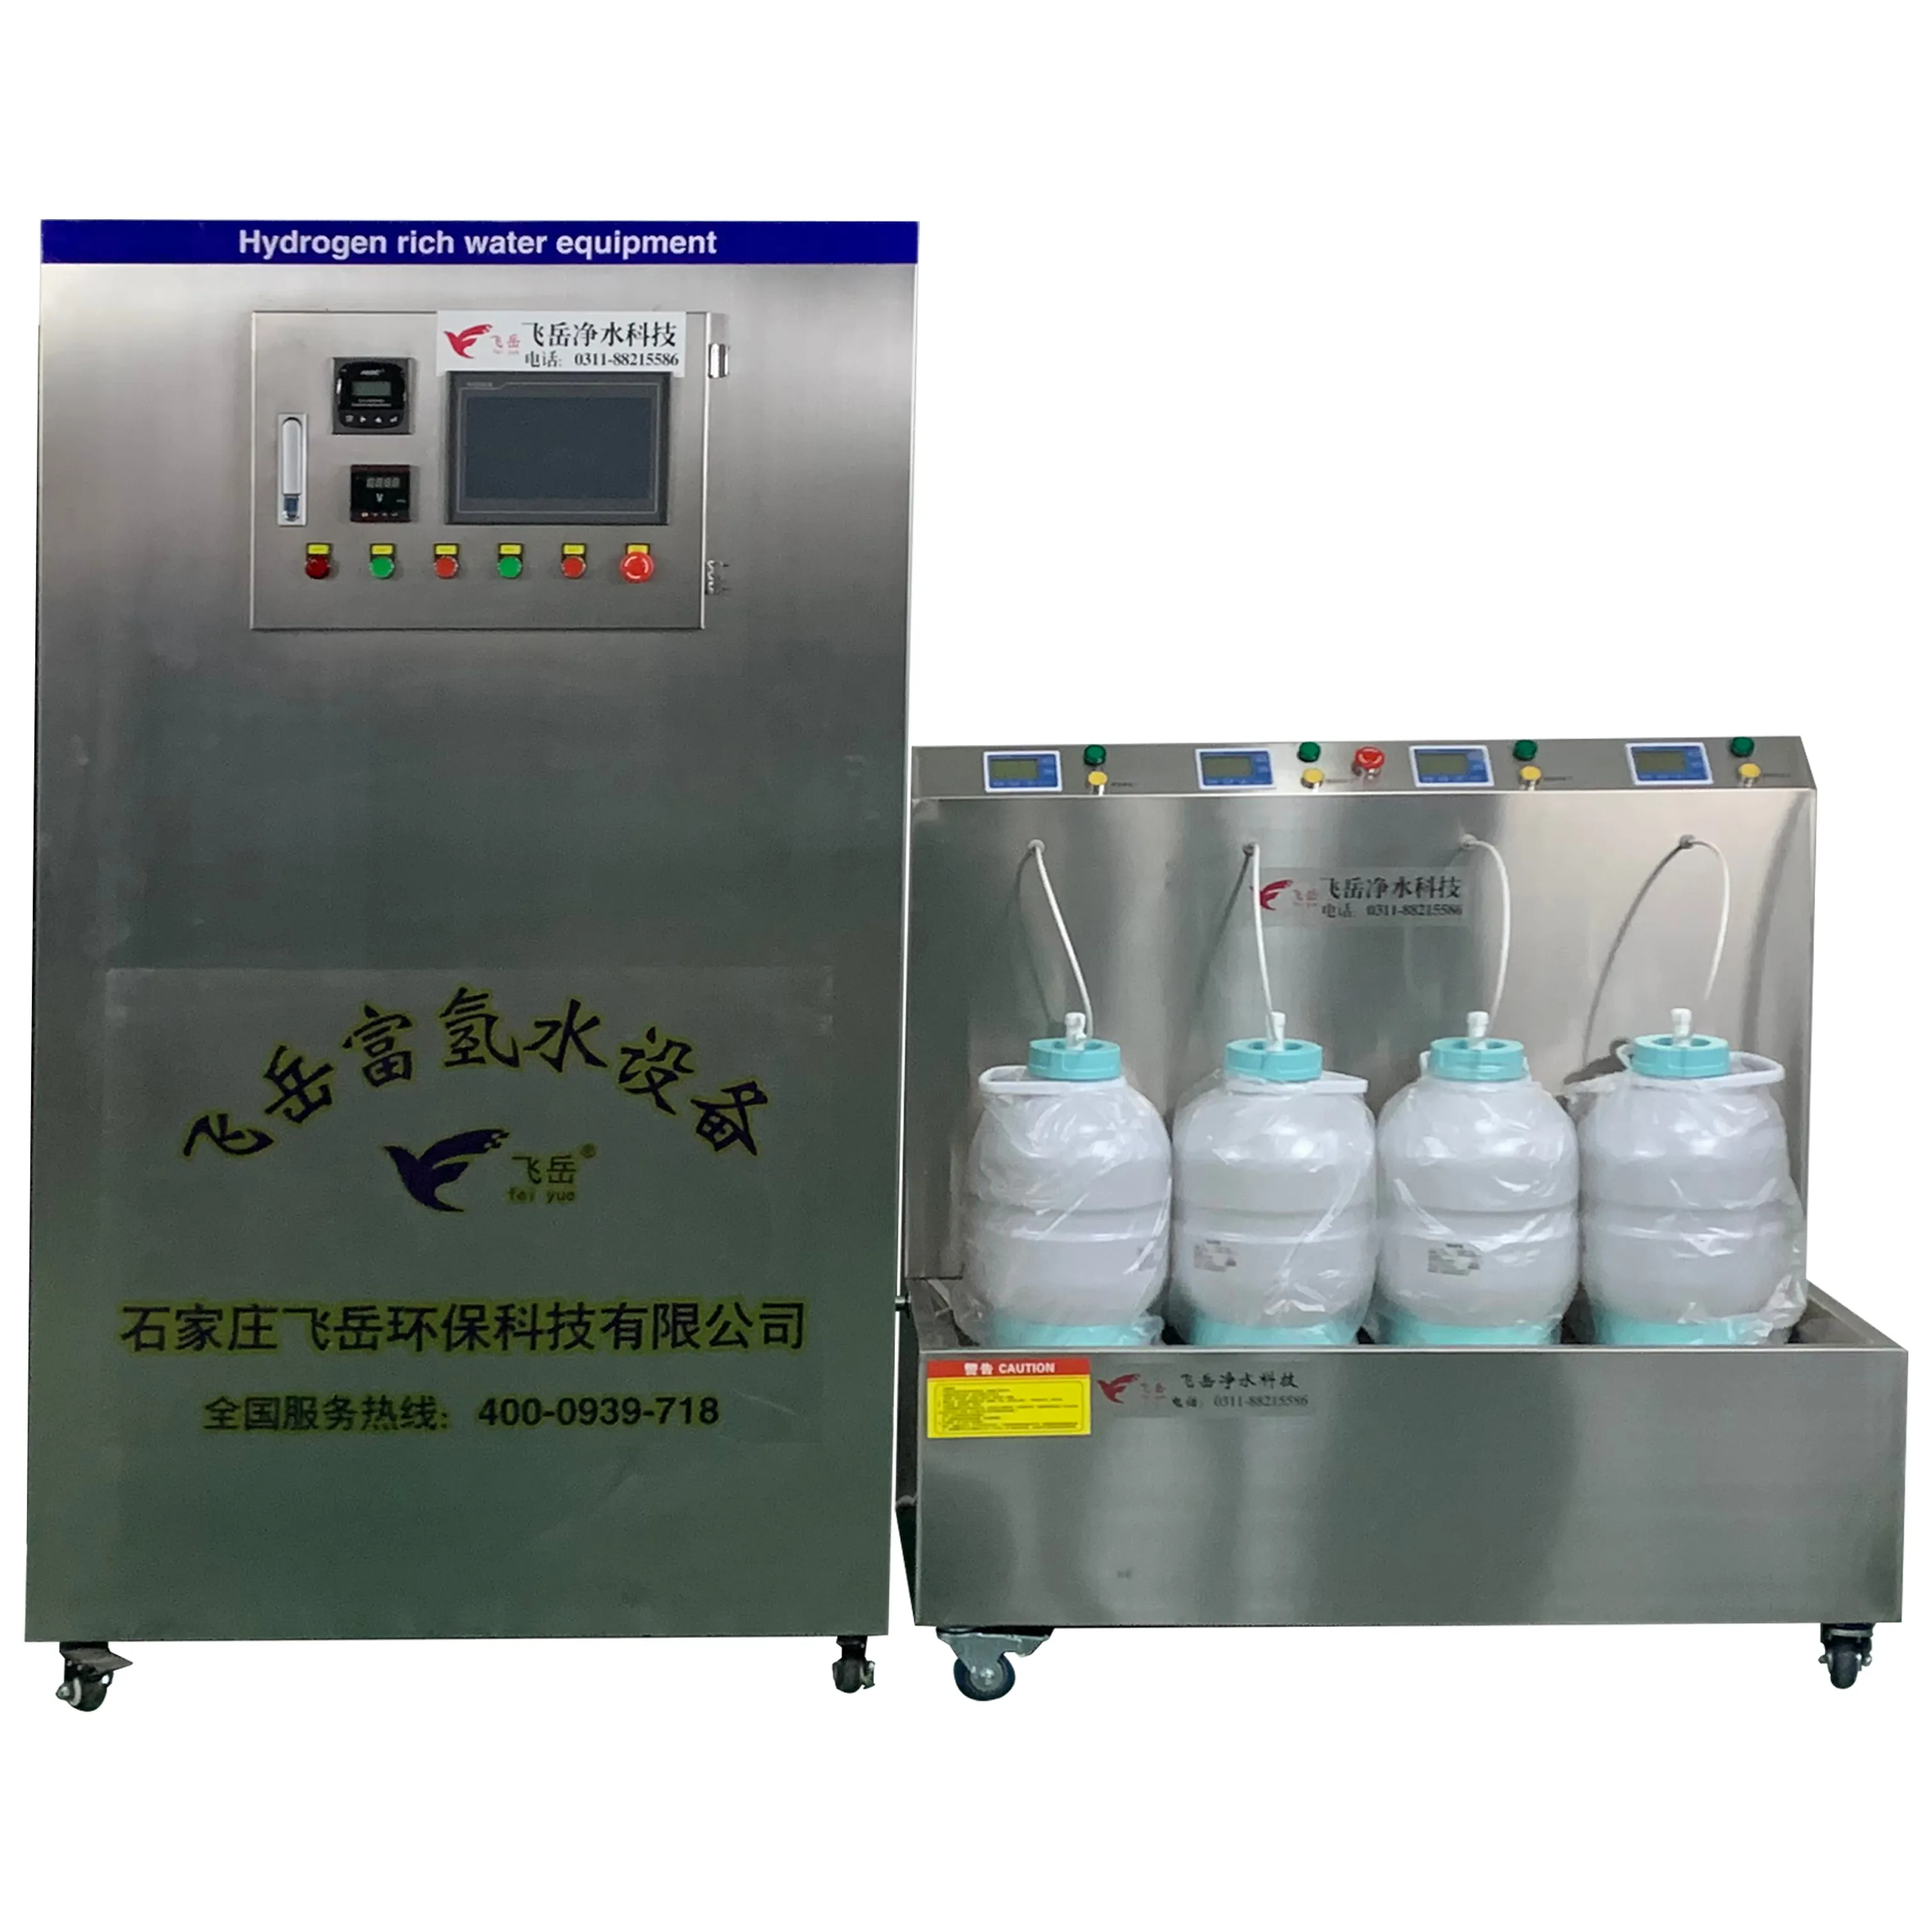 Sistema ricco della macchina della bottiglia di acqua dell'idrogeno dello ionizzatore del piccolo impianto di trattamento delle acque